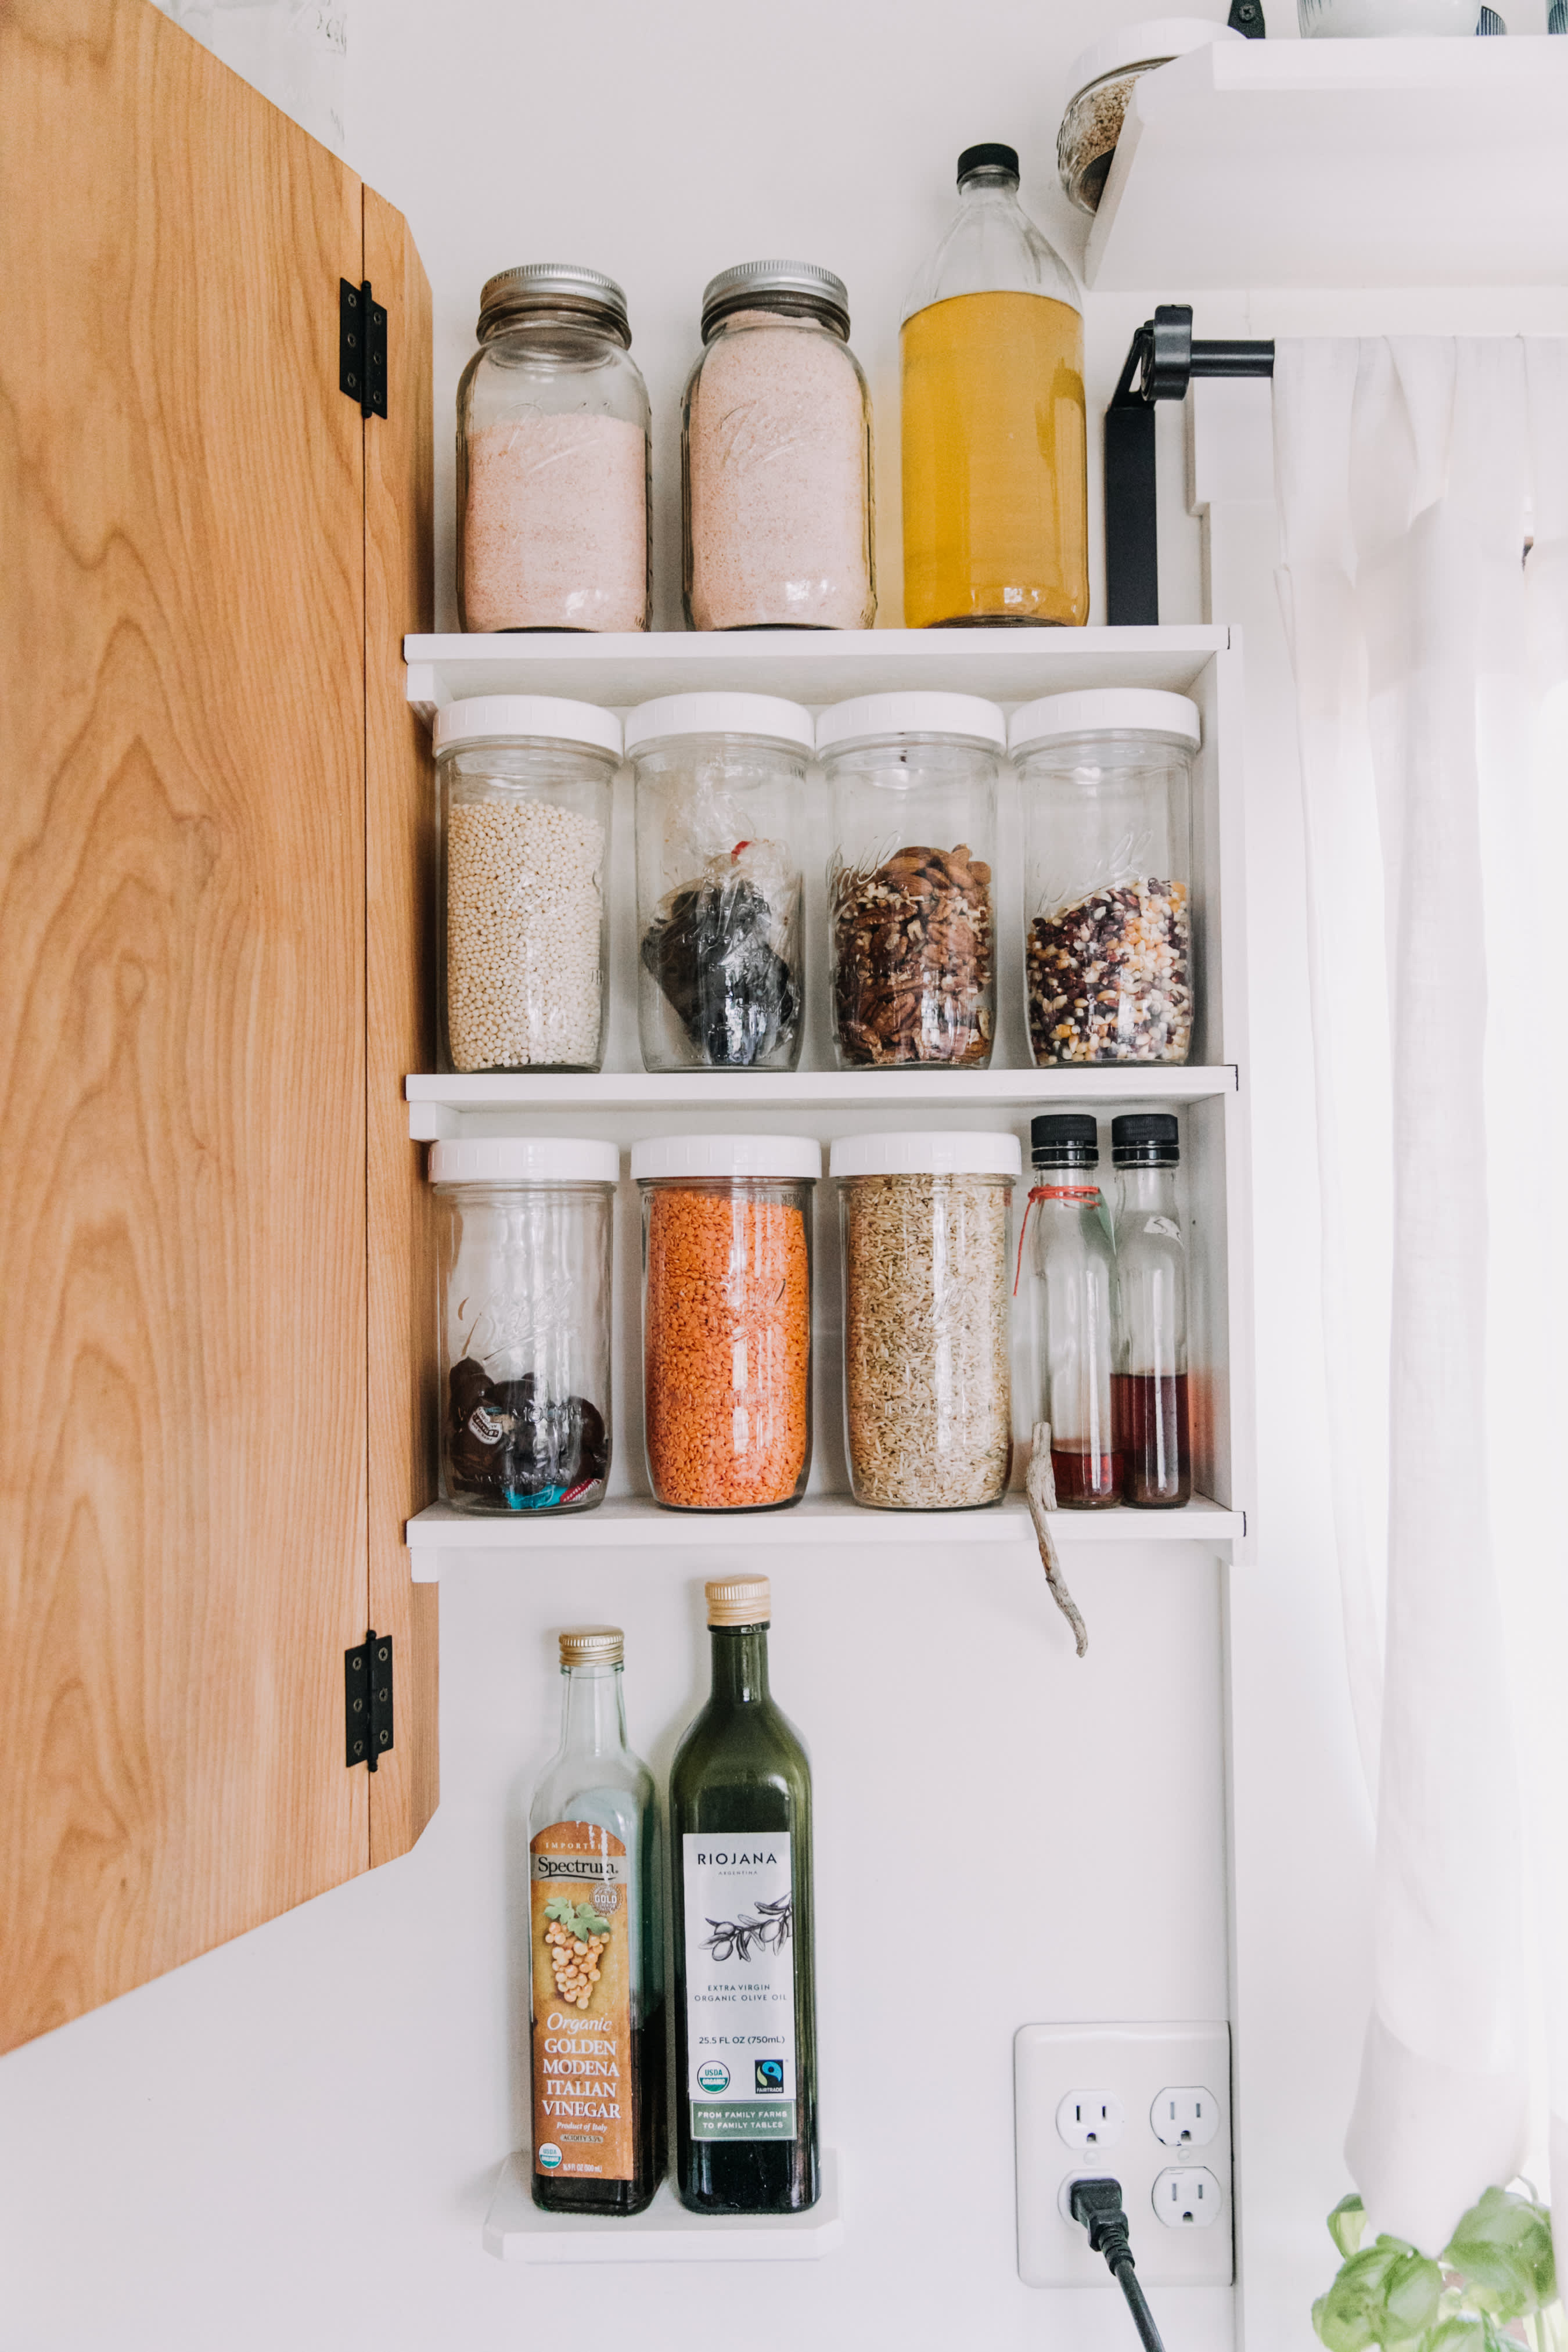 25 Best Small Kitchen Storage & Design Ideas   Kitchn